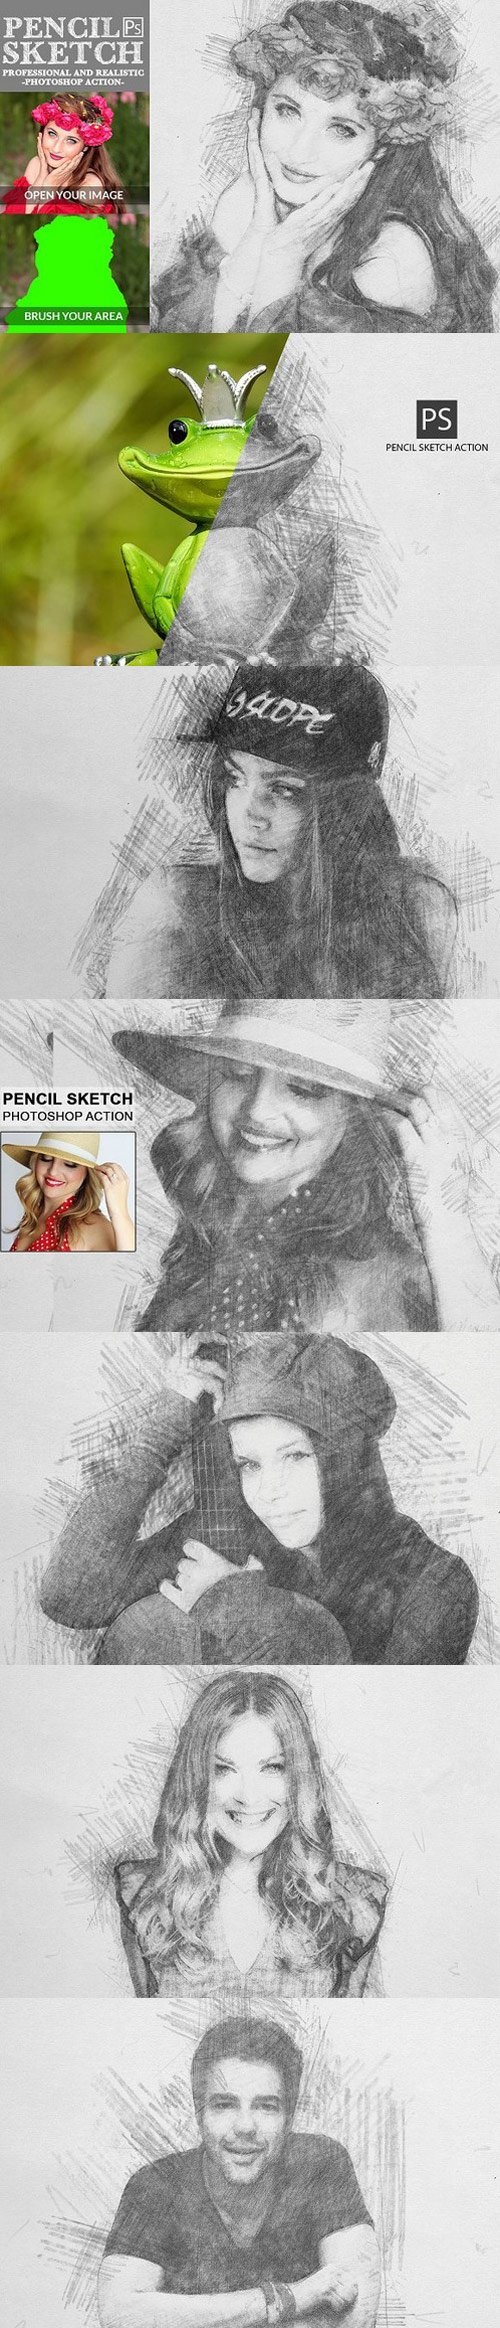 Pencil Sketch Photoshop Action 1586244